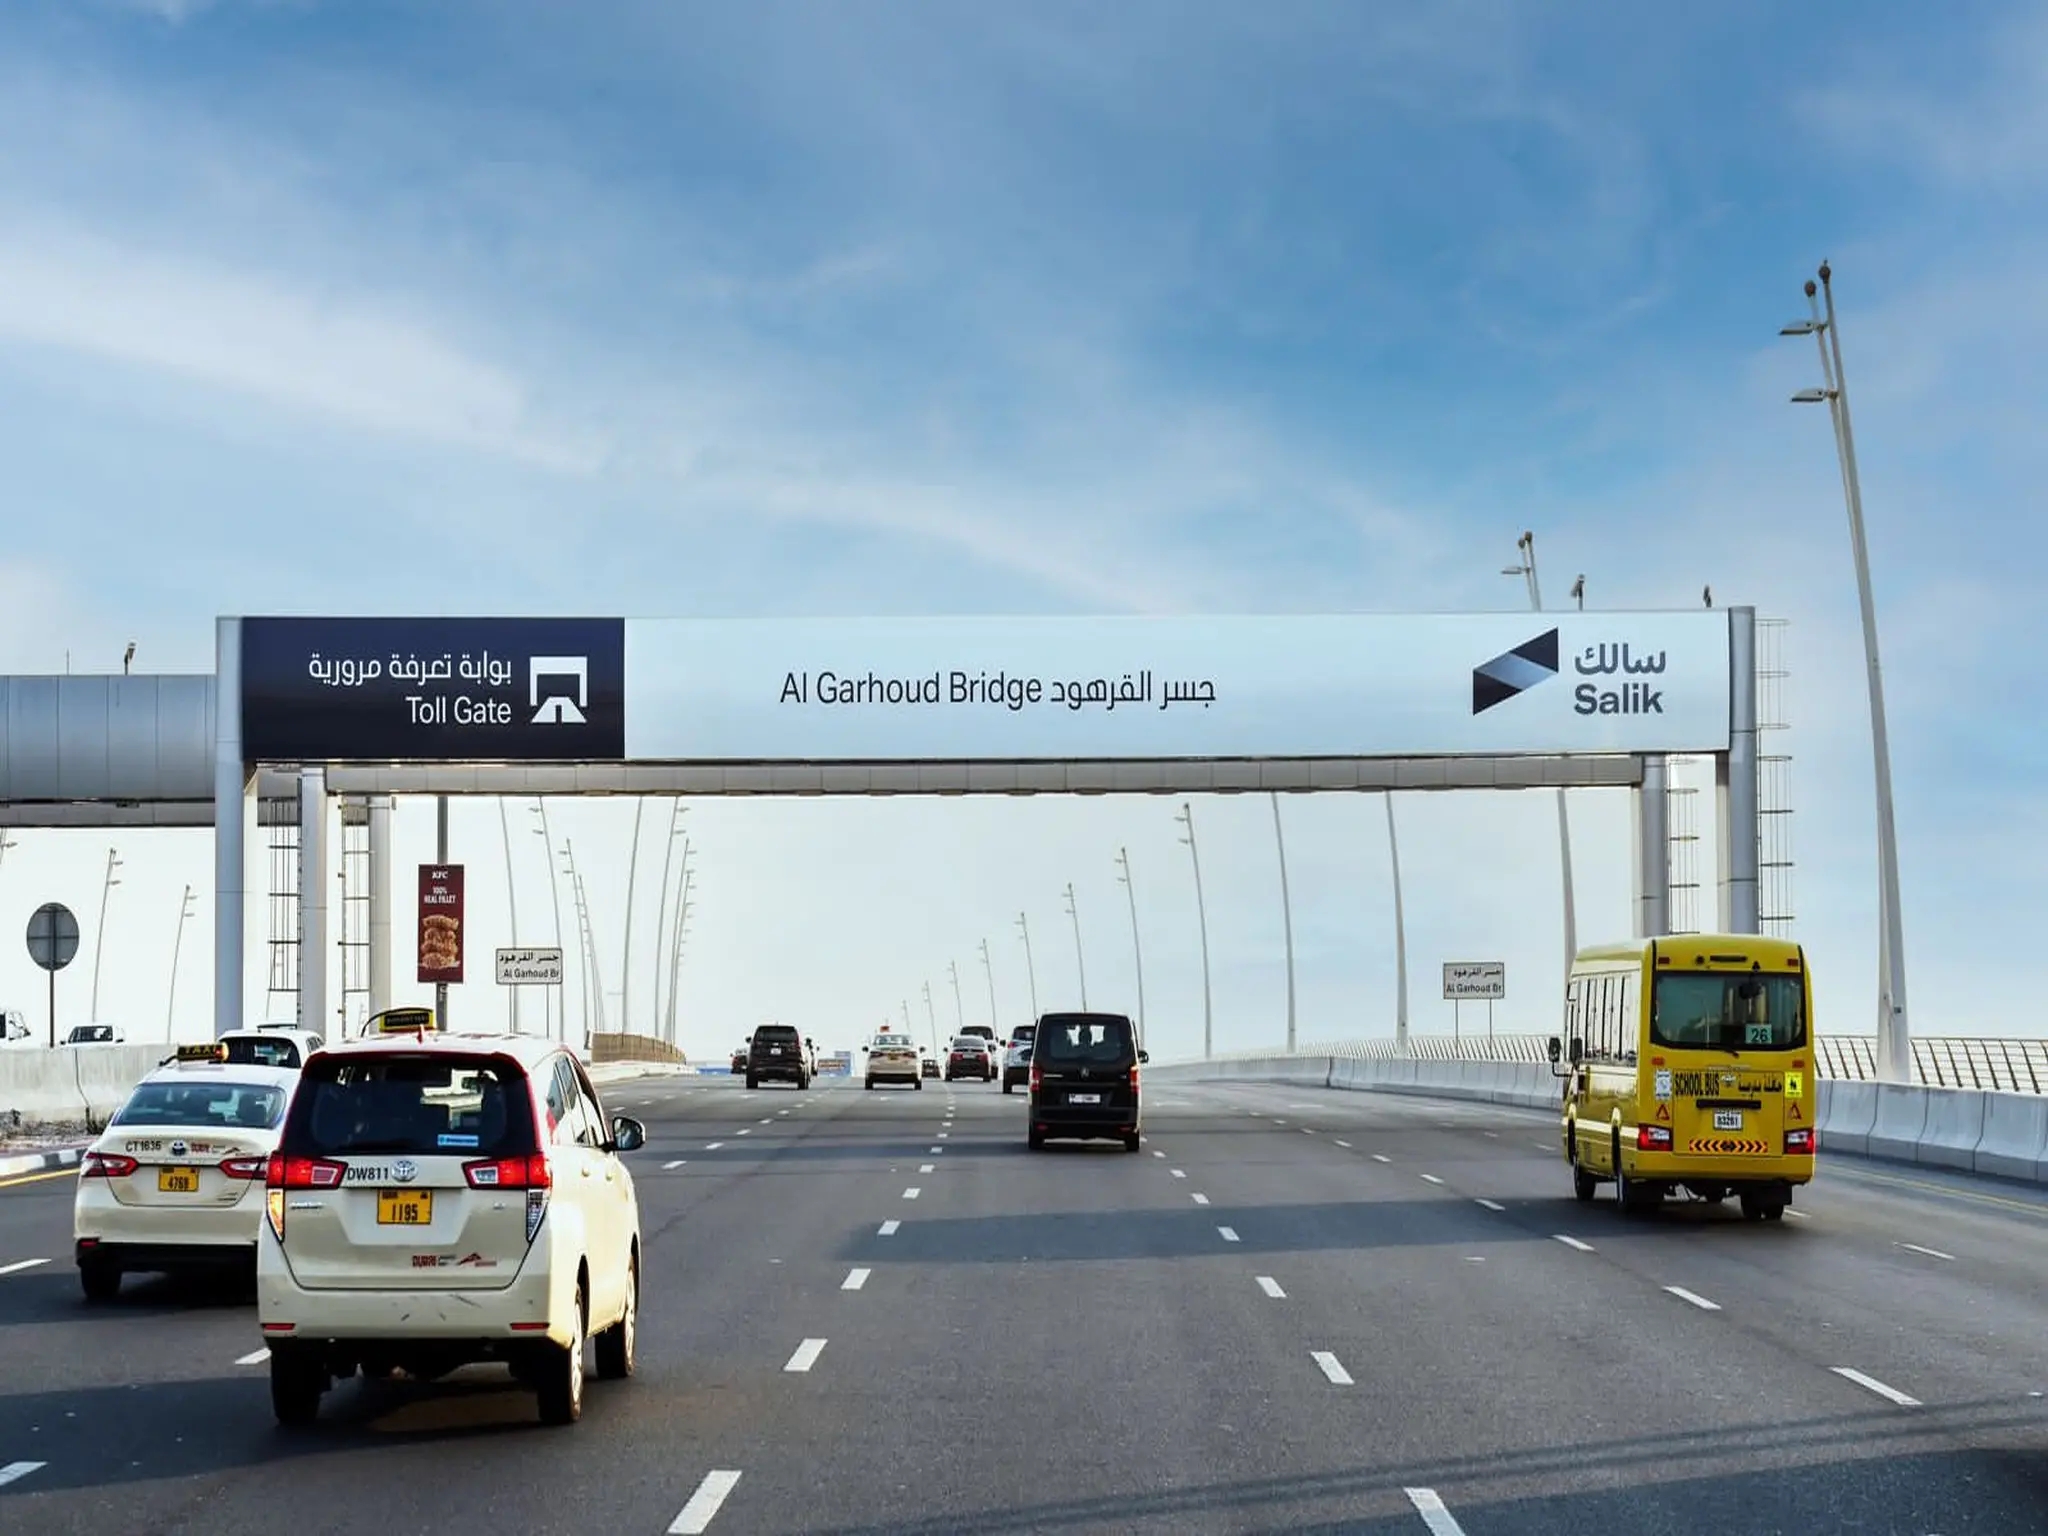 طرق دبي تعلن عن إضافة بوابات سالك جديدة في الطرق الرئيسية في دبي